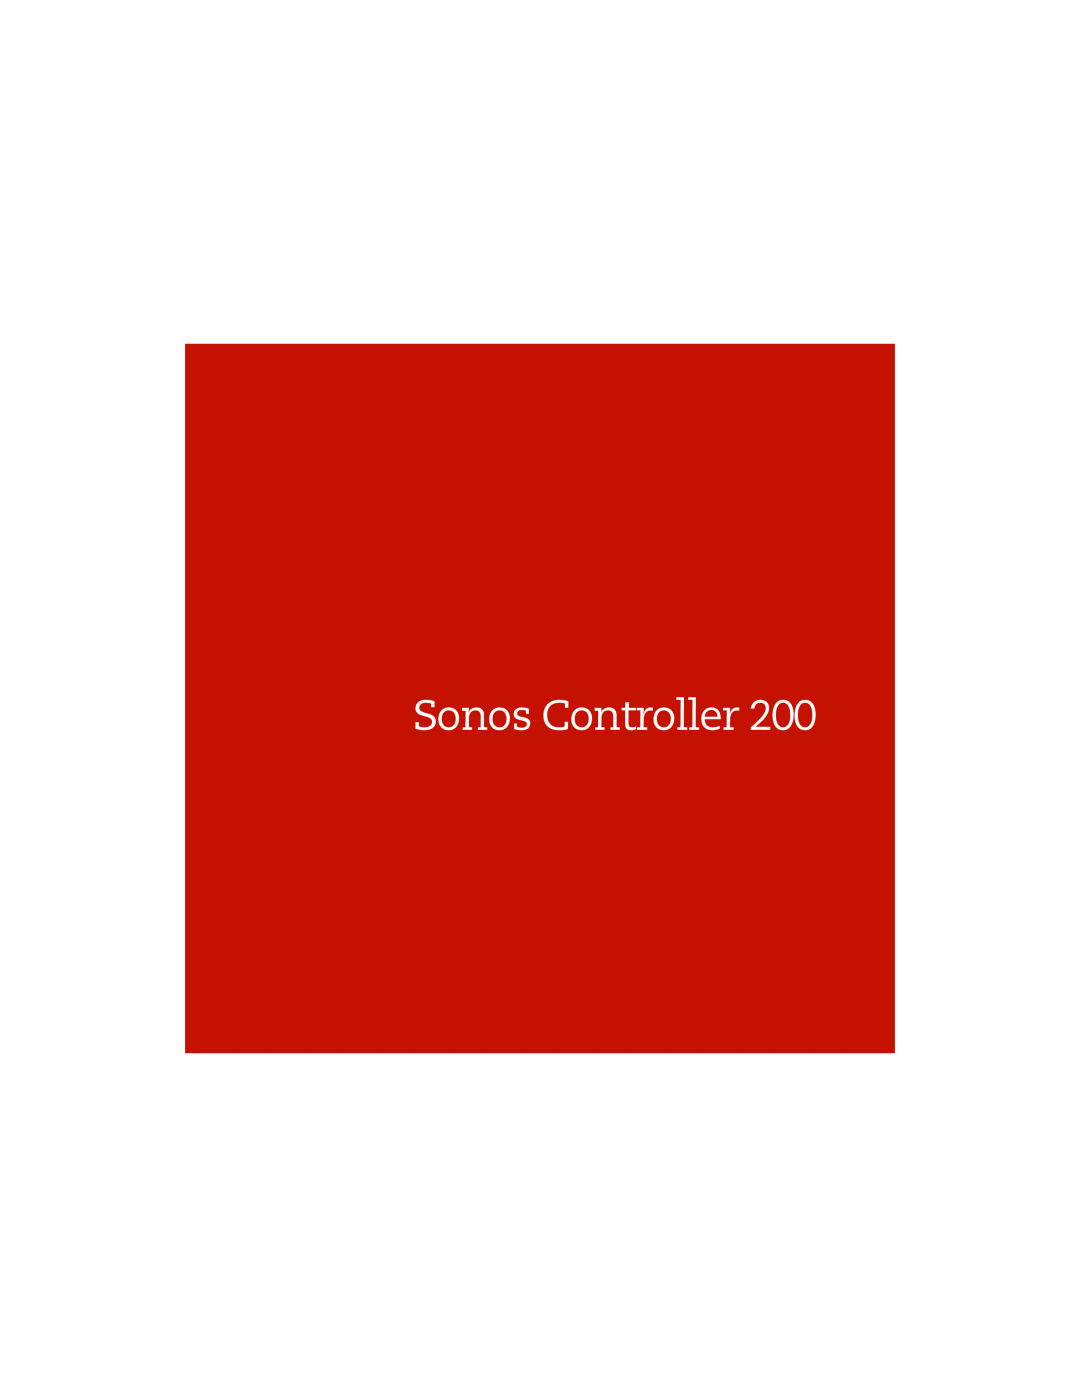 Sonos 200 manual Sonos Controller 